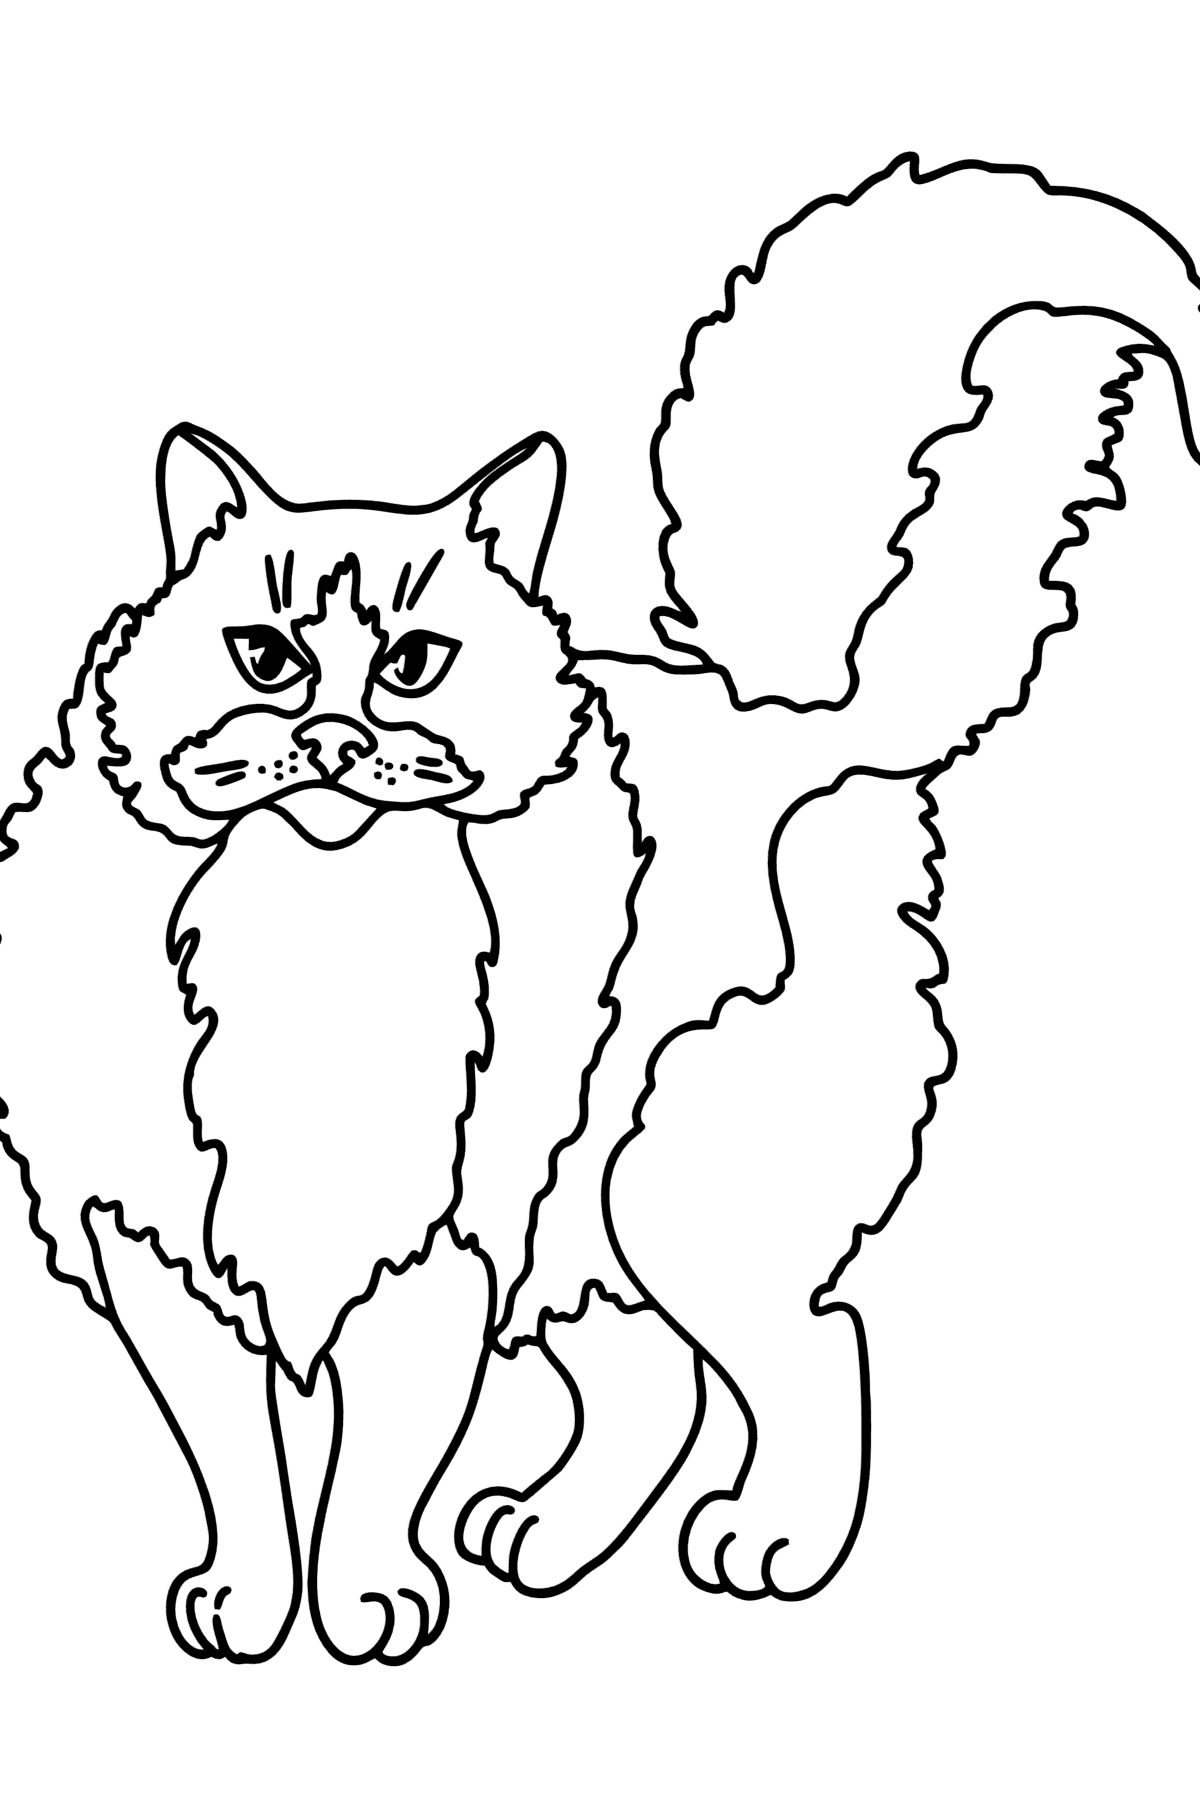 Dibujo de Gato Ragdoll para colorear - Dibujos para Colorear para Niños